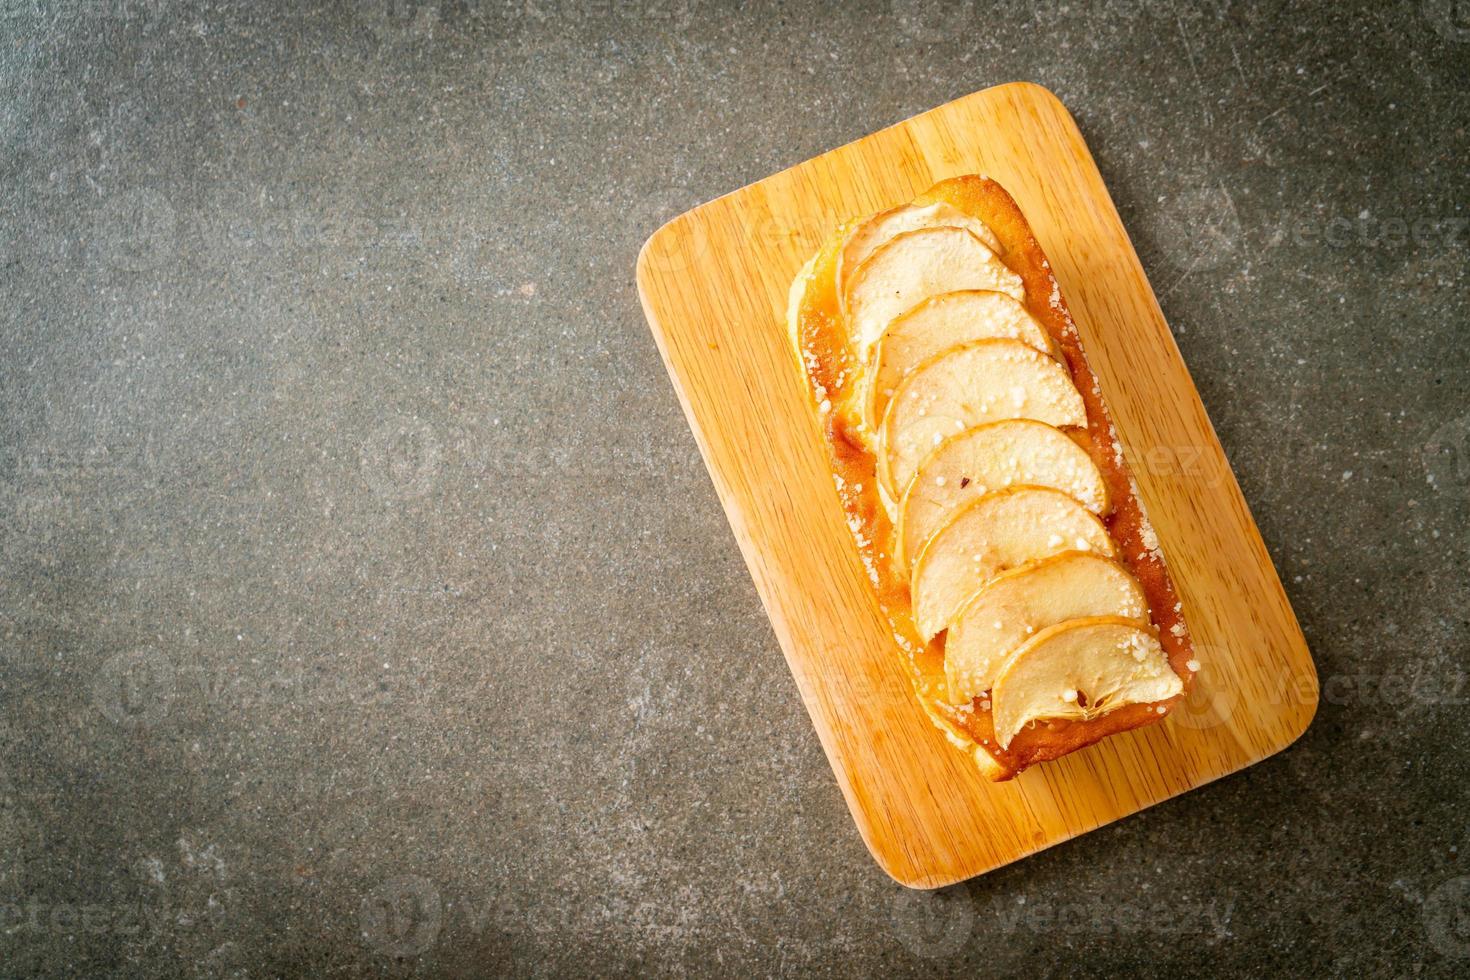 Pan de manzana desmenuzado sobre tablero de madera foto